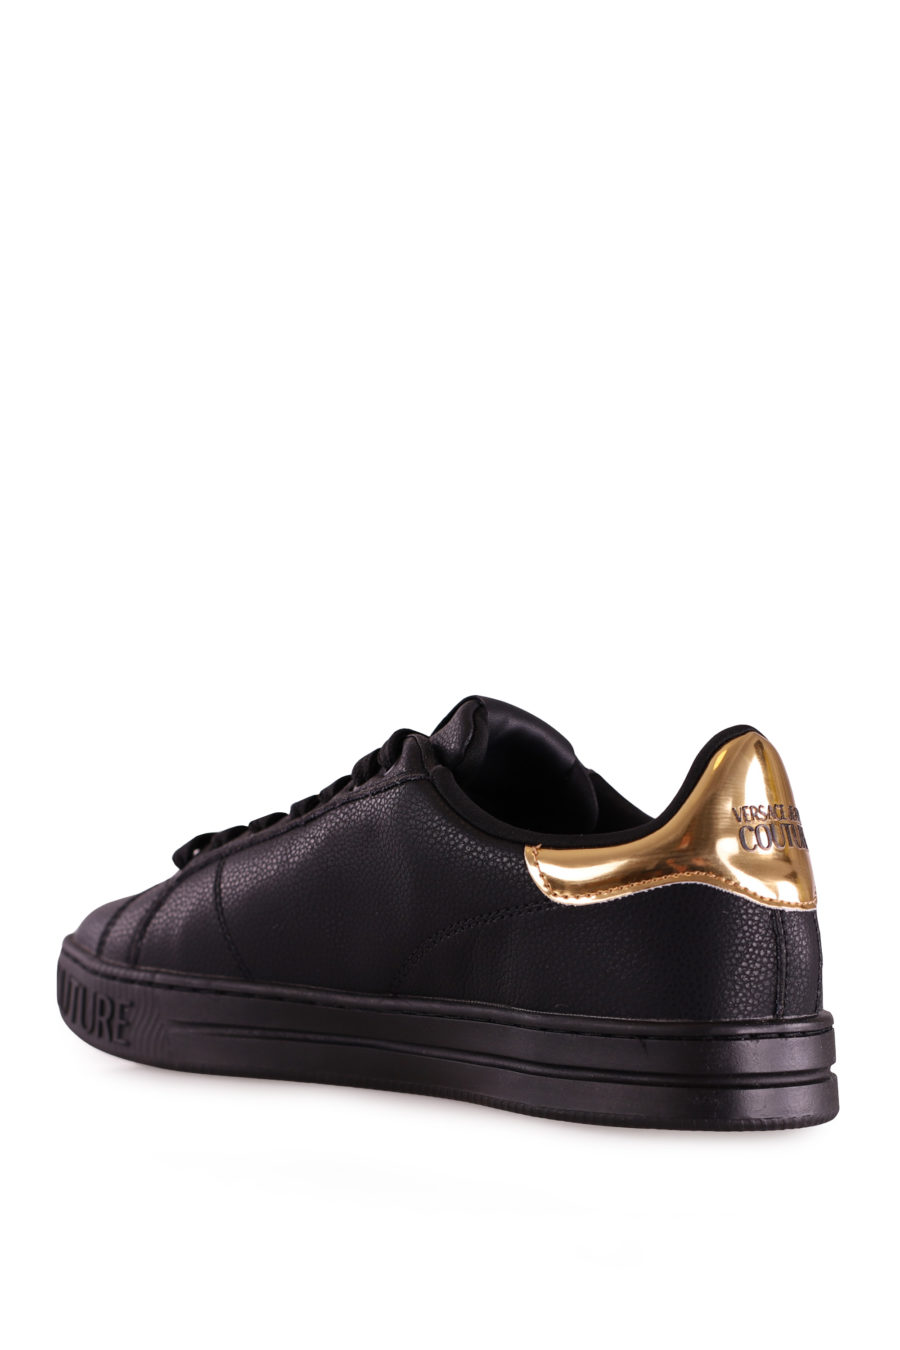 Zapatillas negras con cordones y logotipo dorado - 80133ff856eec15de47ec273c726218917757e42